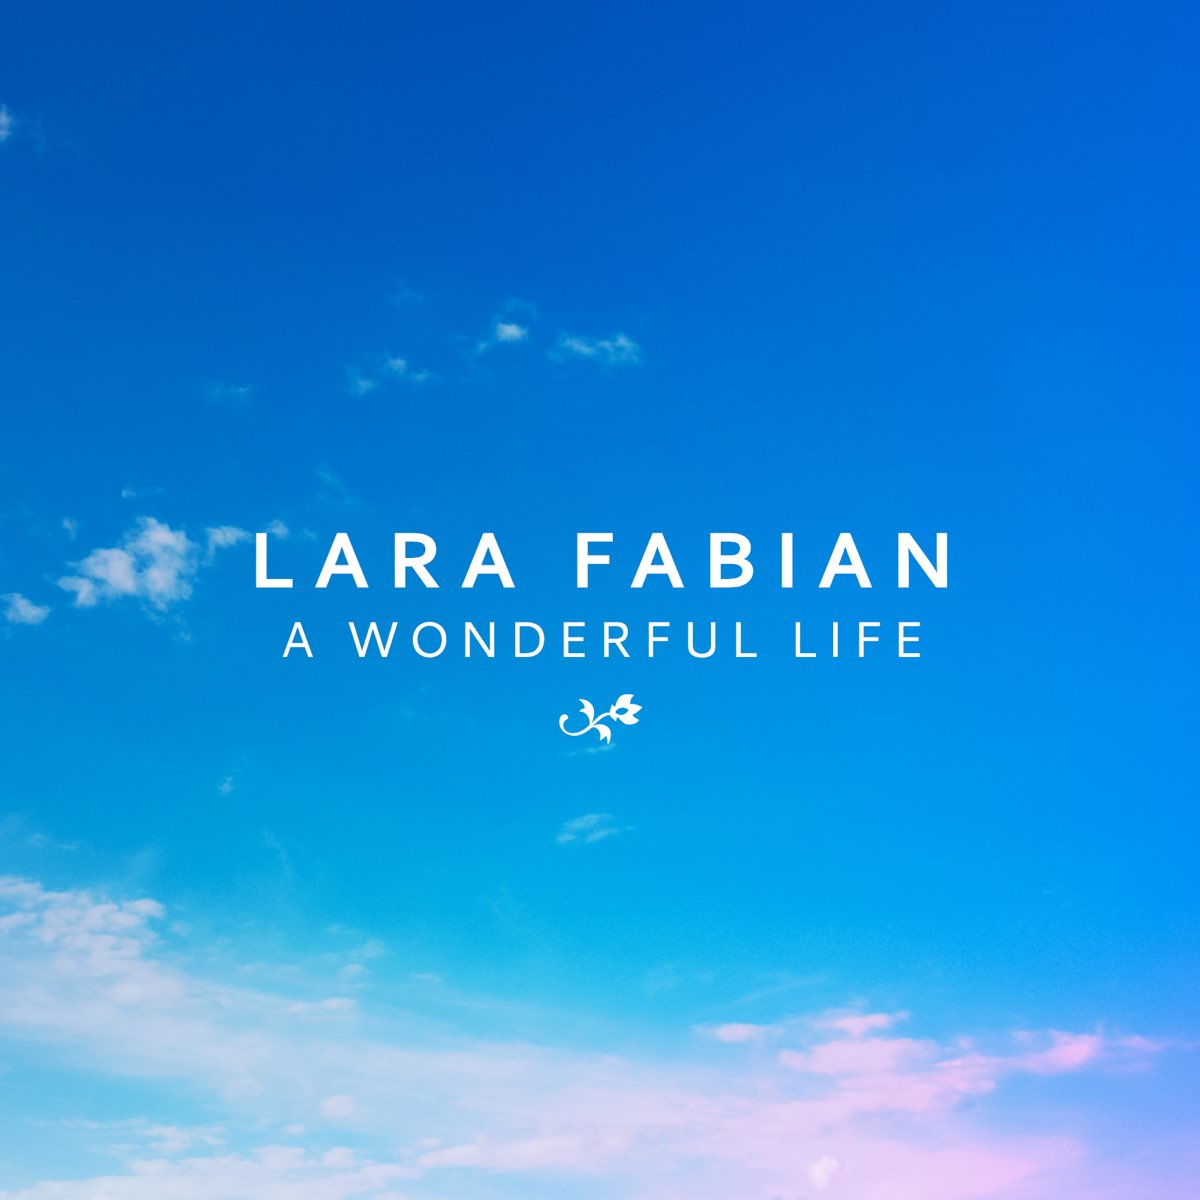 Wonderful life слушать. Wonderful Life. Вандерфул лайф песня. Lara Fabian wonderful Life Cover. Lara Fabian logo.